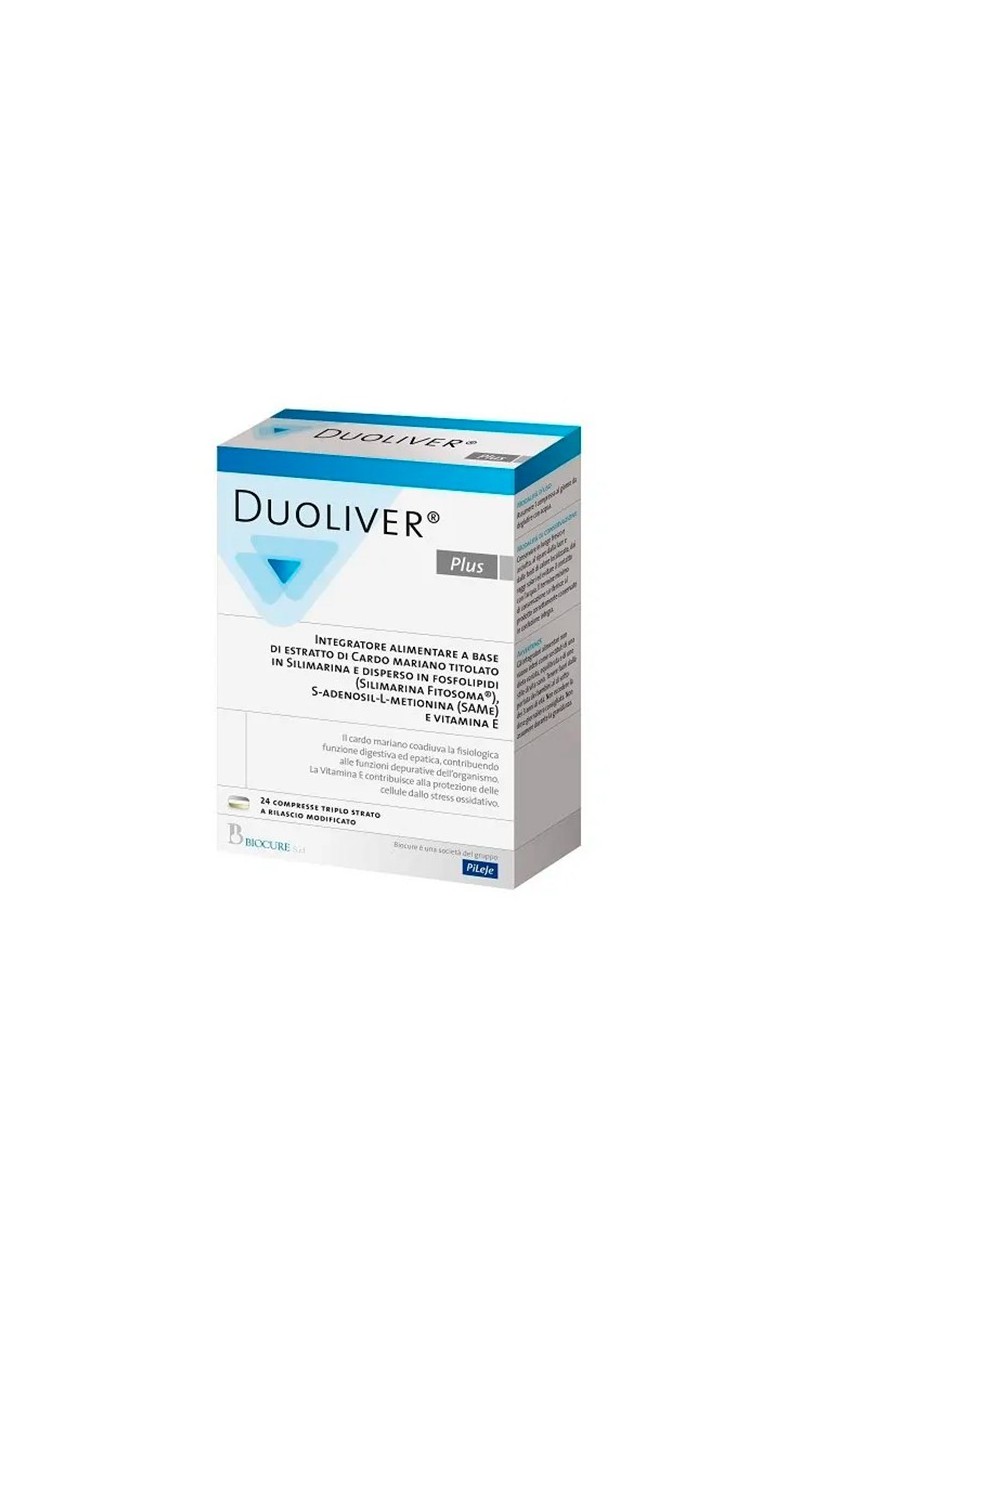 Pileje Duoliver Plus 24 Tablets